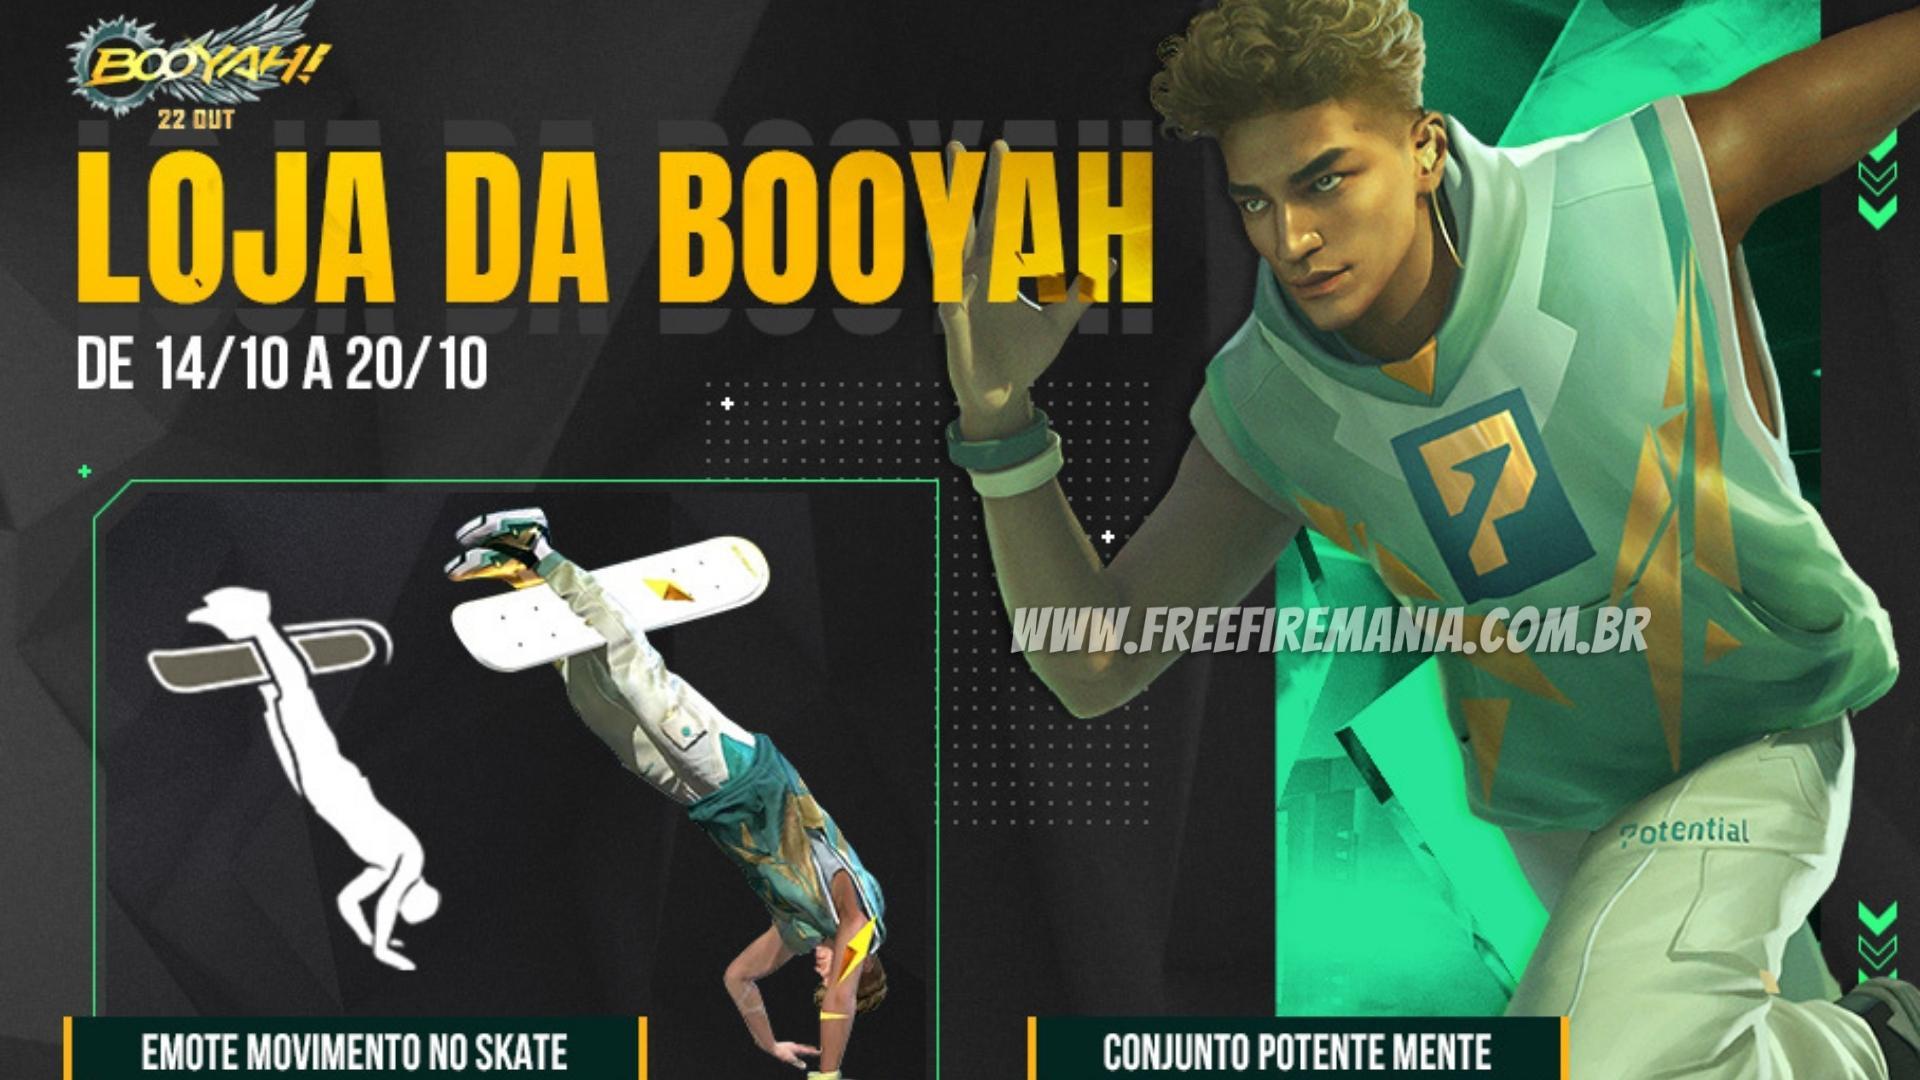 Free Fire: Loja da Booyah chega com Emote Movimento no Skate e skin Potente Mente